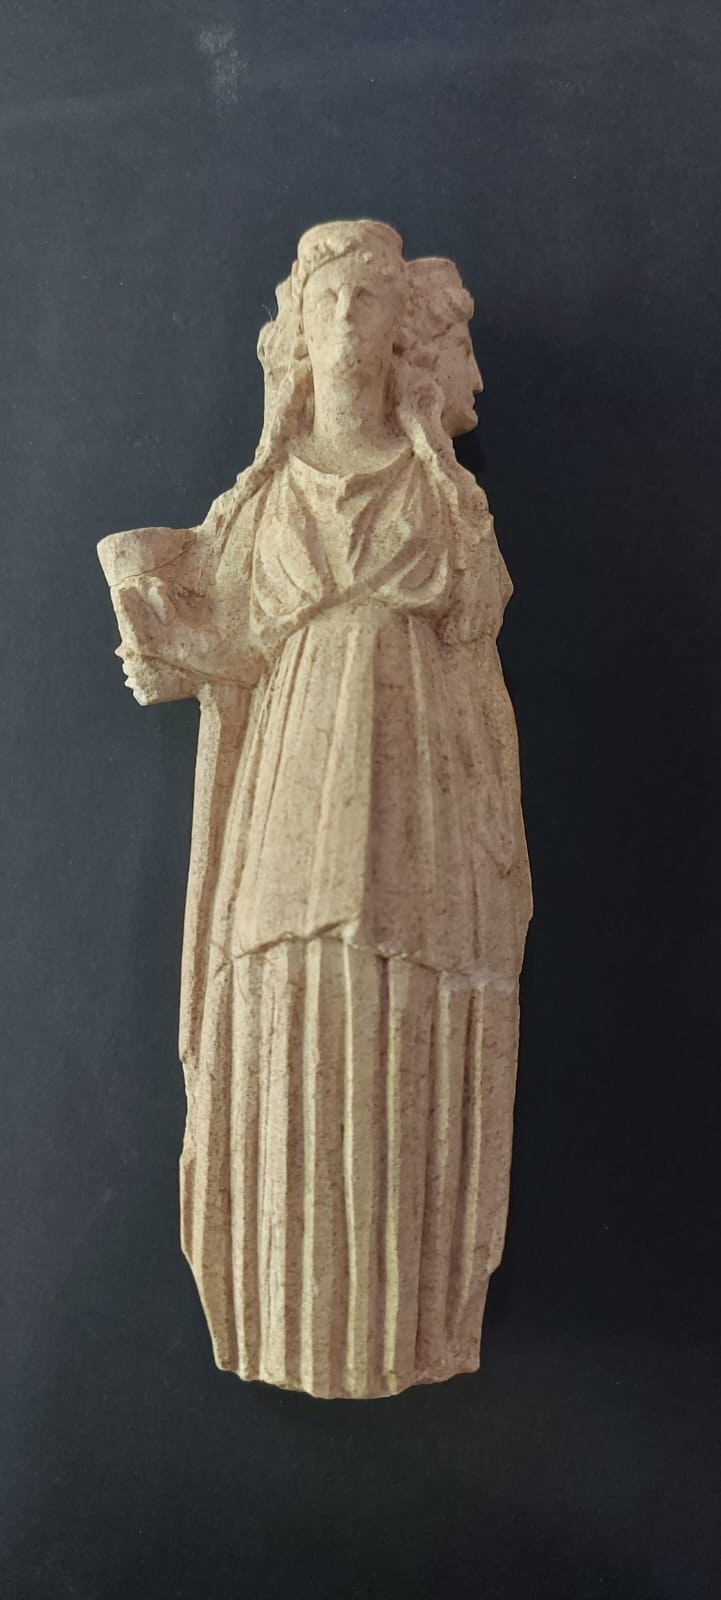 Figurka bogini Hekate znaleziona w Aydıncık. Ma 20 centymetrów wysokości /Batman University Information Technology Department /materiał zewnętrzny